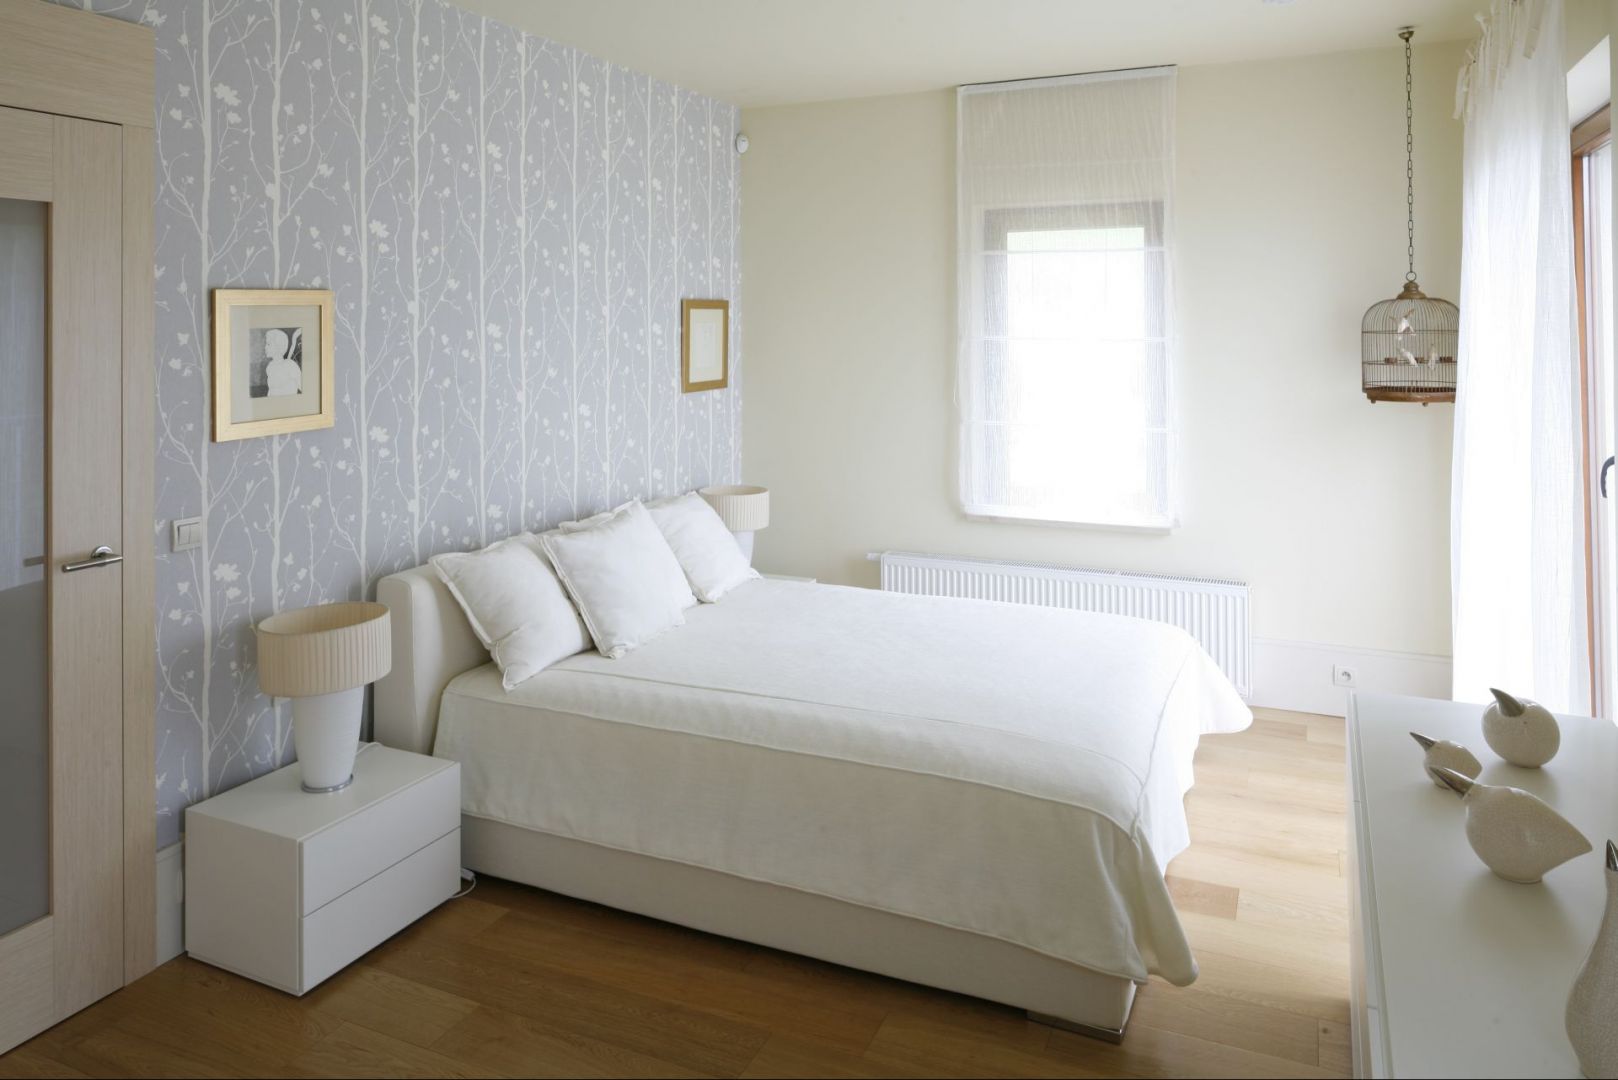 Białe łóżko usytuowane centralnie na największej ścianie w sypialni, która jednocześnie stanowi najbardziej widoczny element w pokoju, ponieważ została udekorowana tapetą. Proj. Małgorzata Borzyszkowska. Fot.Bartosz Jarosz